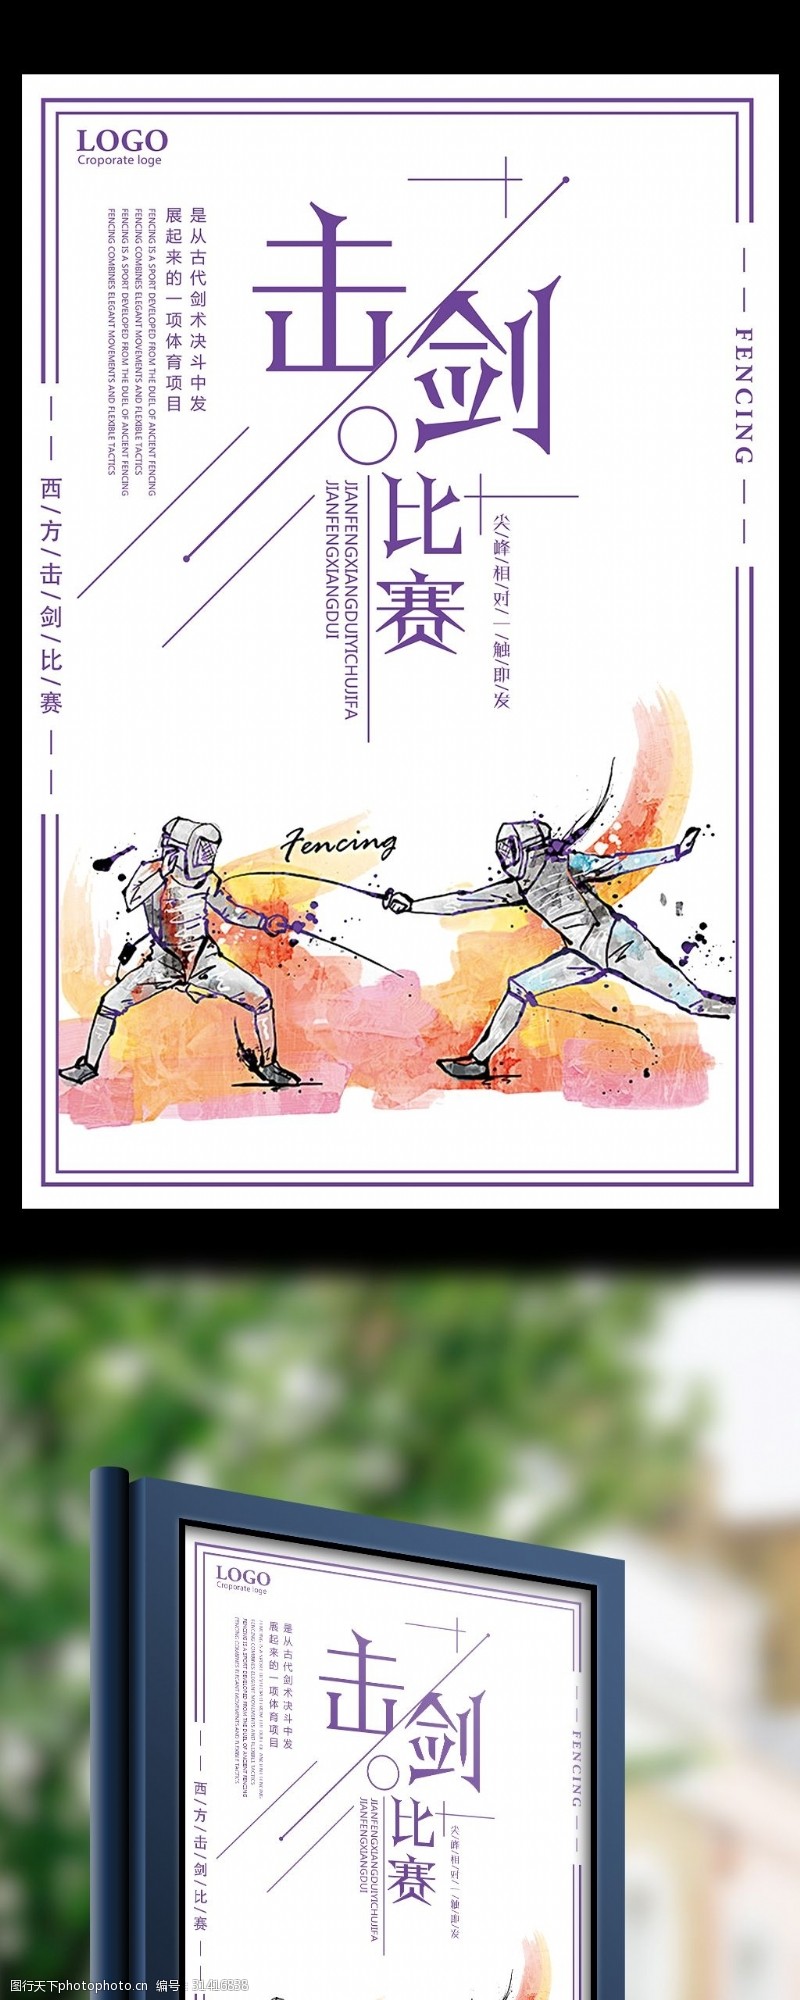 击剑运动击剑比赛创意宣传海报设计